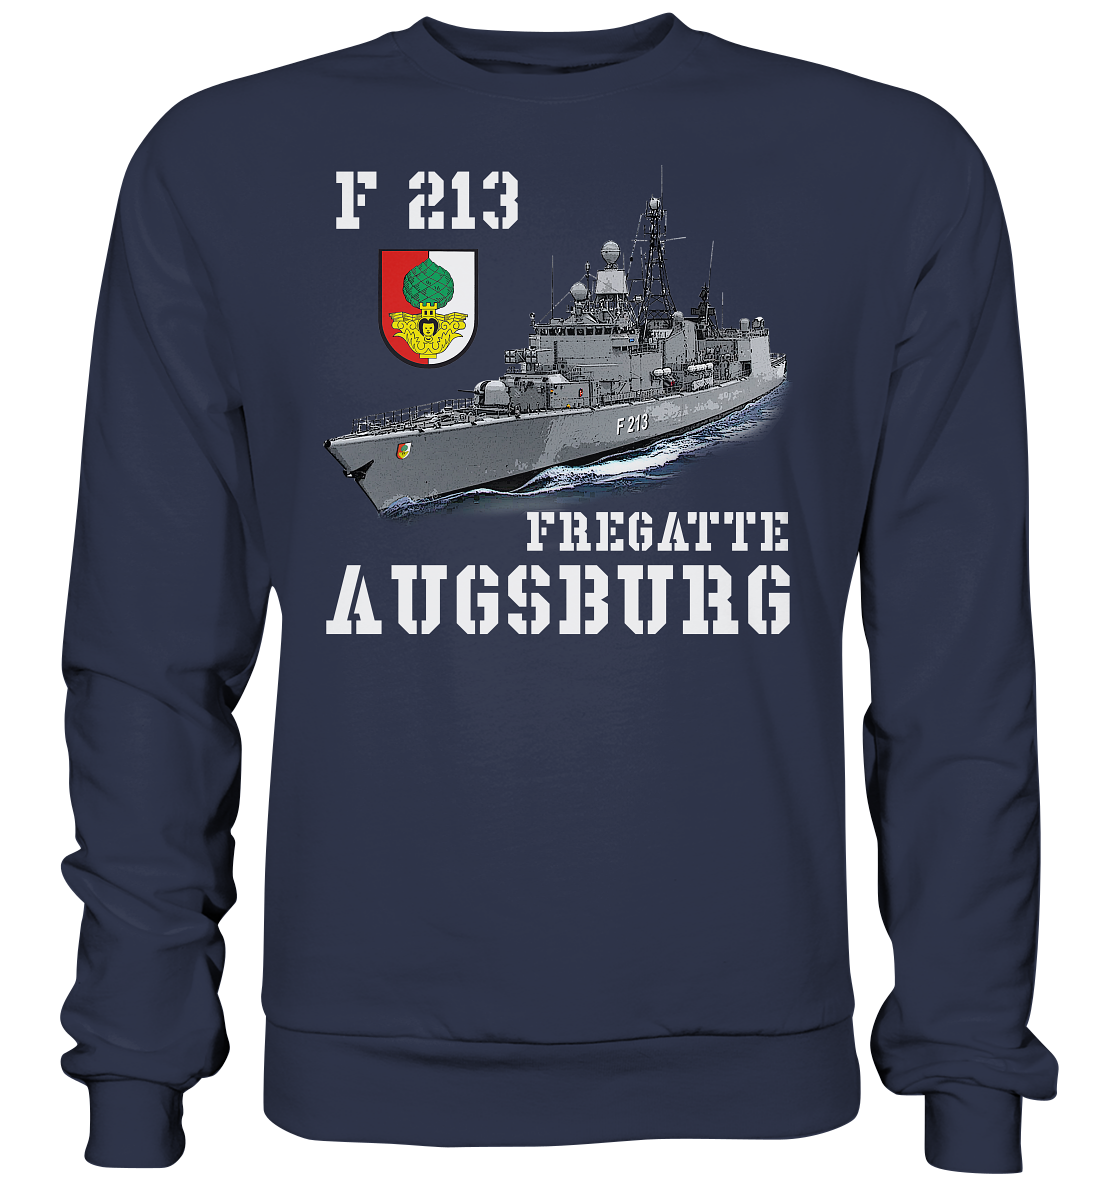 F213 Fregatte AUGSBURG - Premium Sweatshirt